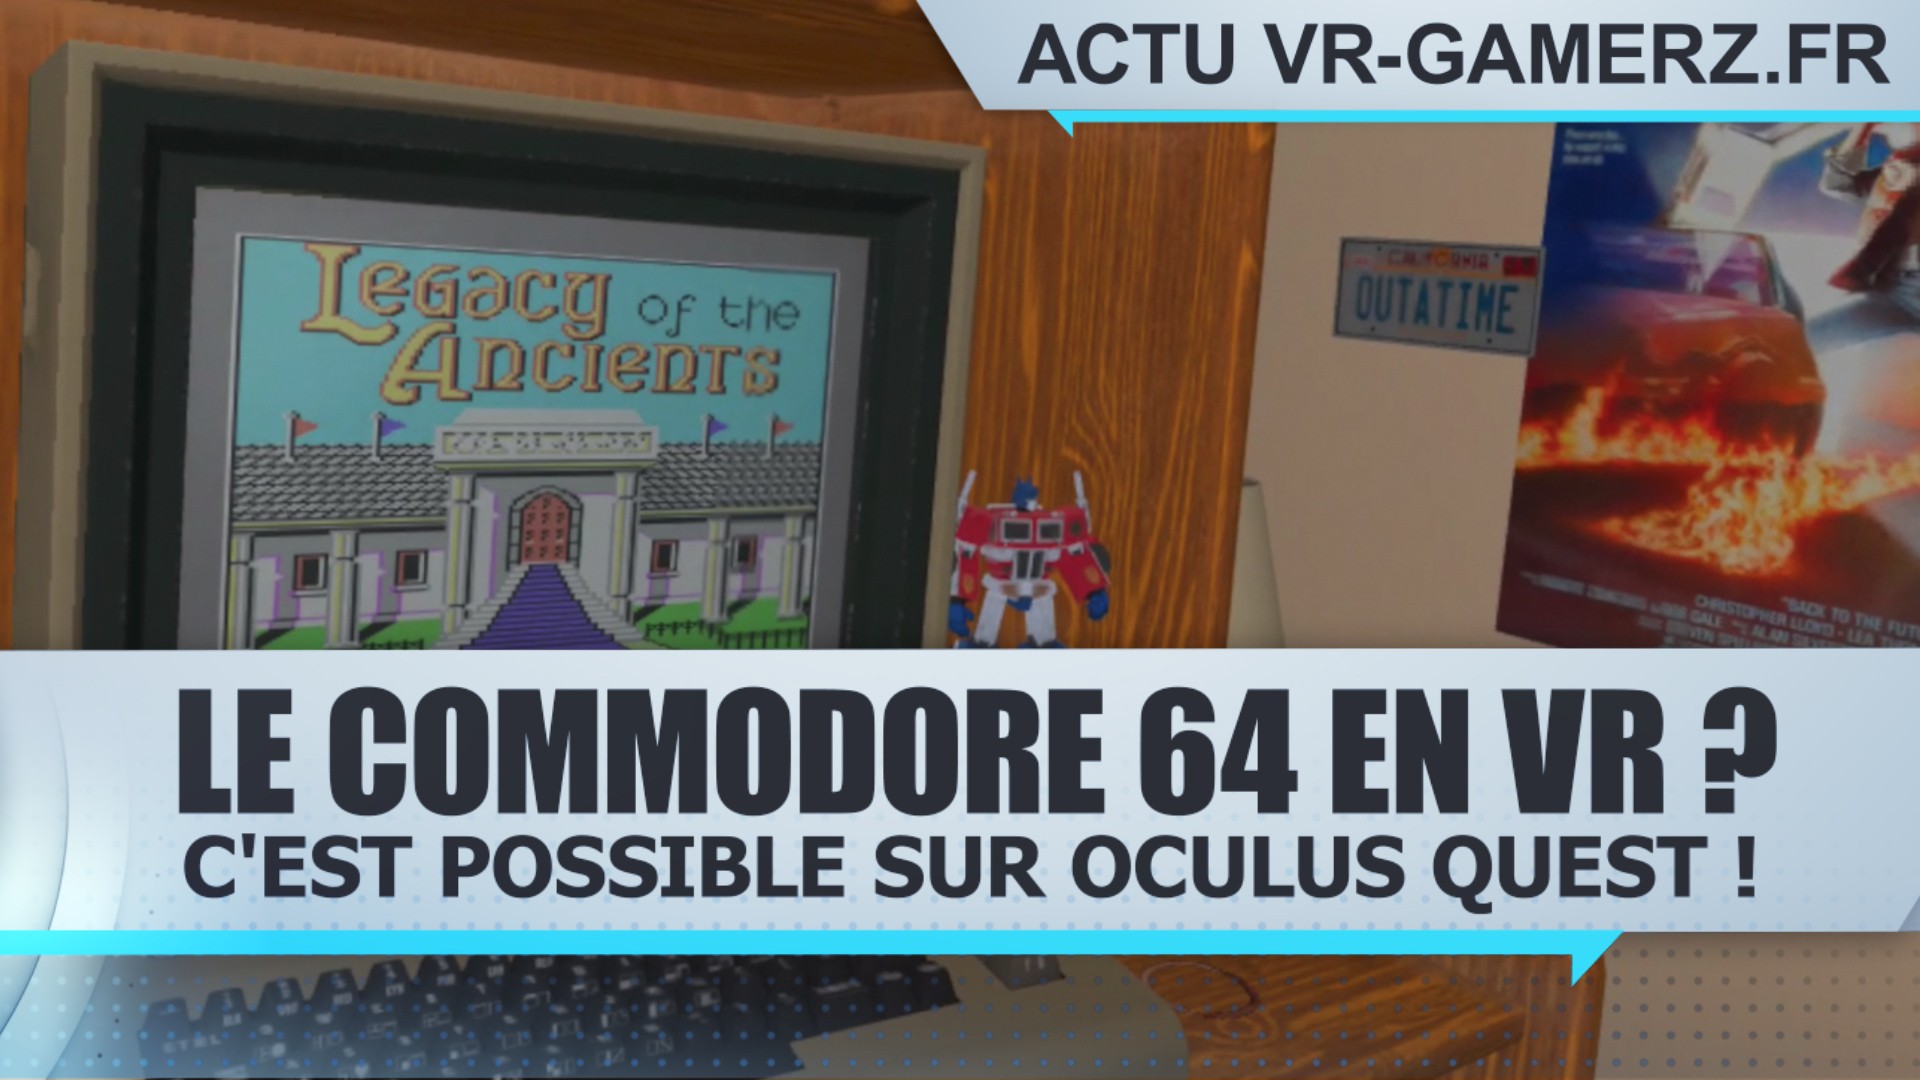 Redécouvrir le commodore 64 en VR sur Oculus quest, c’est possible  !